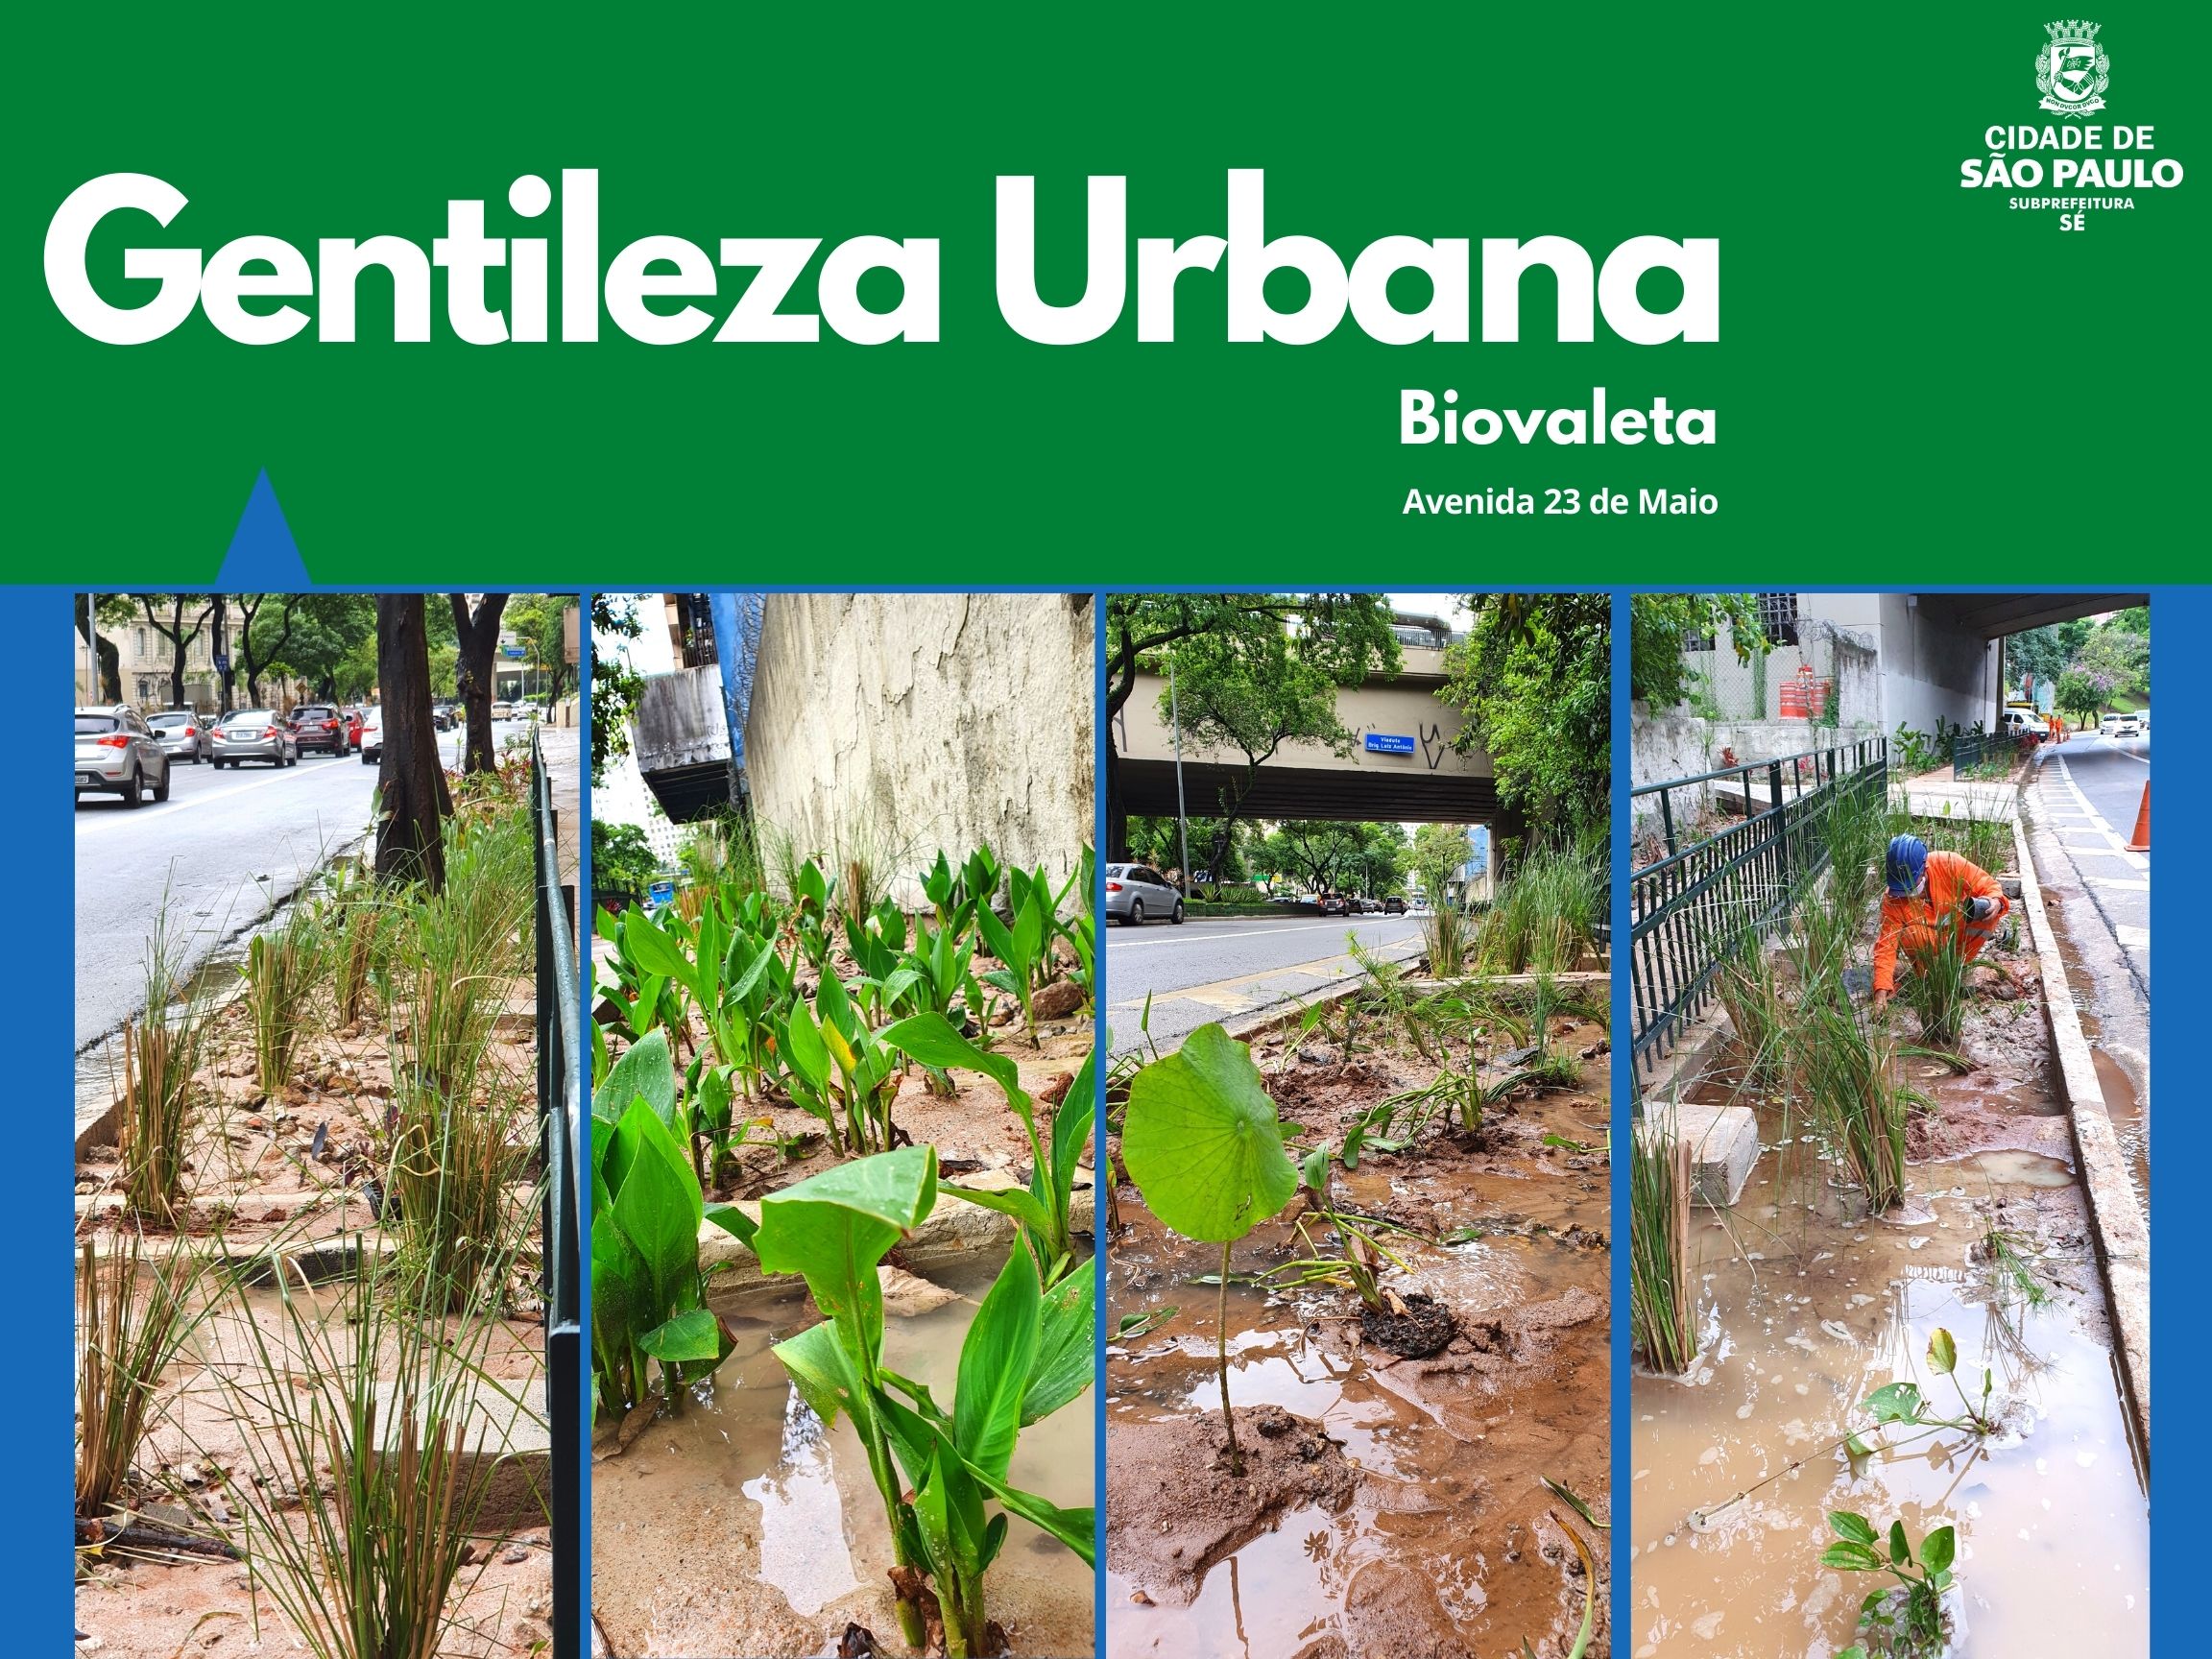 Arte escrito Gentileza Urbana com o logotipo da subprefeitura Sé mostra quatro fotos da biovaleta com plantas na água